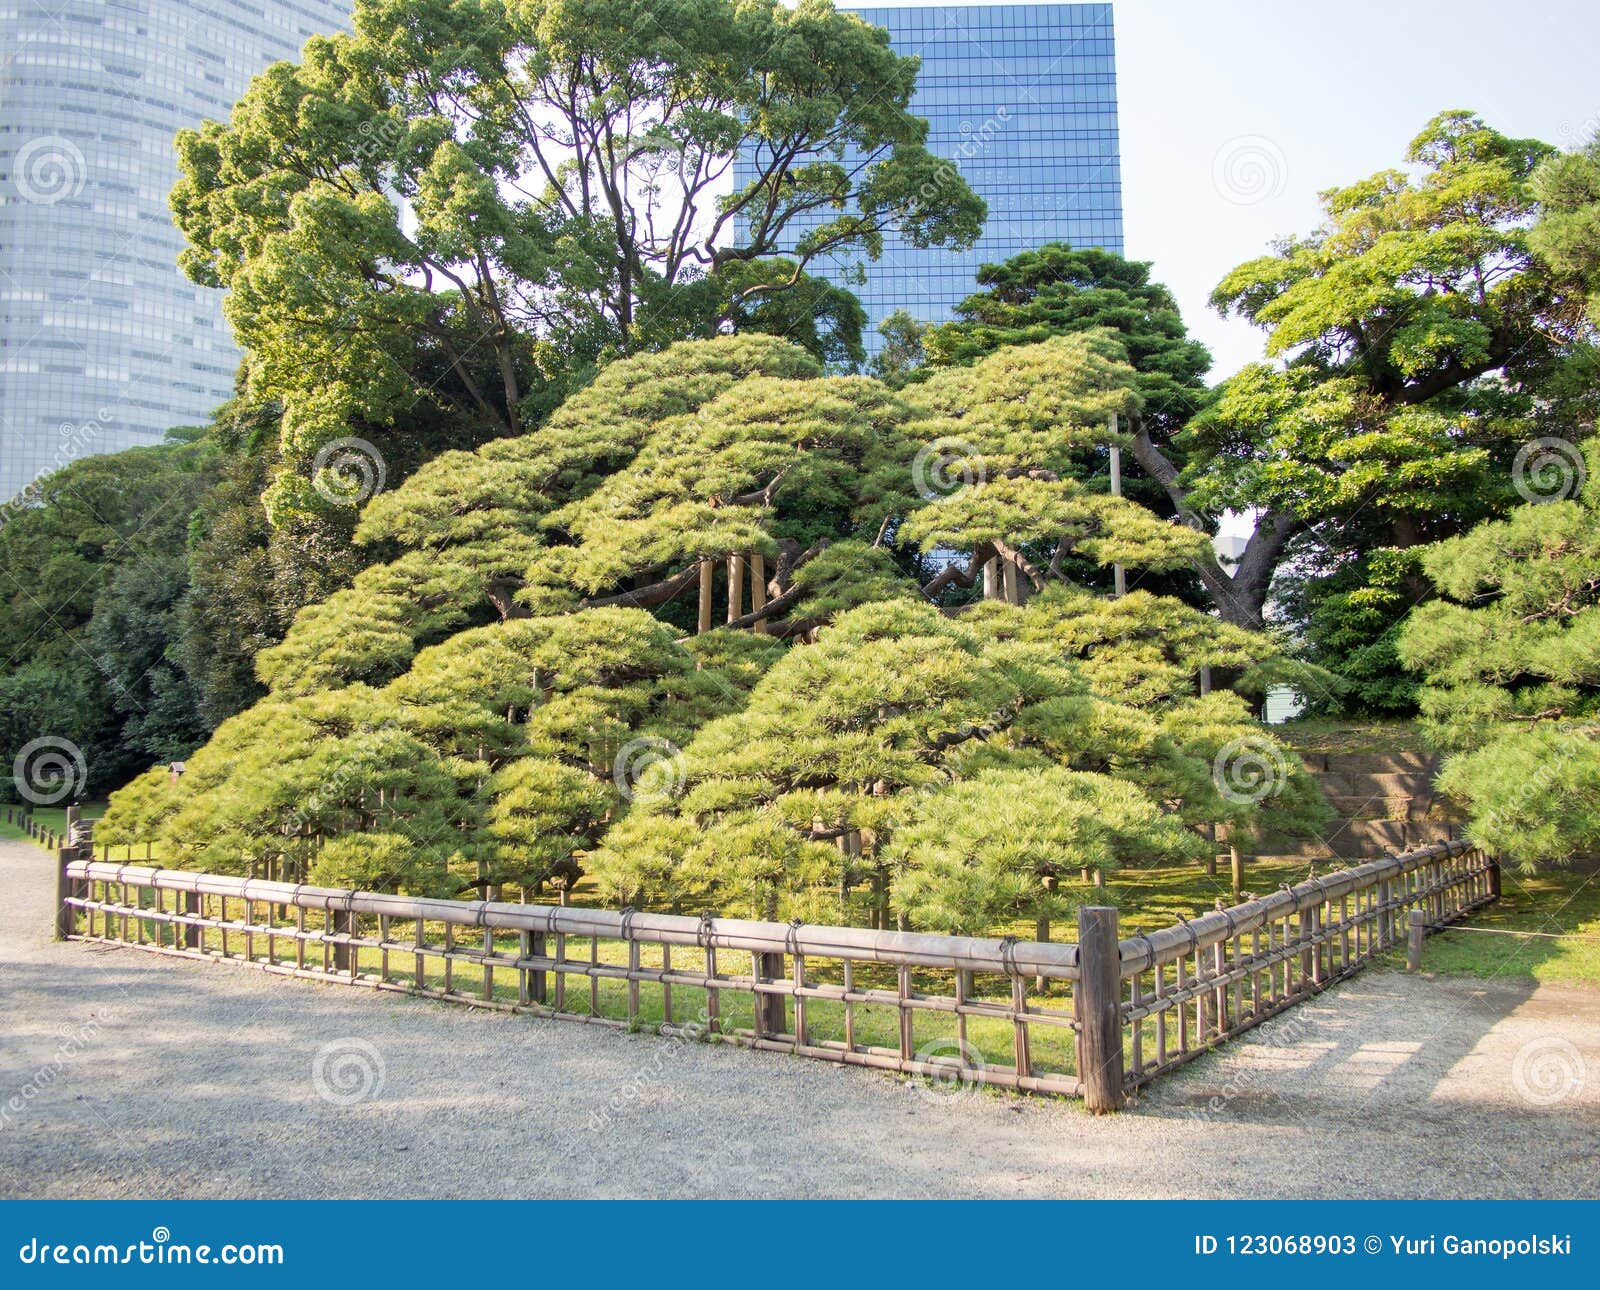 300 Year Old Pine Tree At Hama Rikyu Garden Tokyo Japan Stock